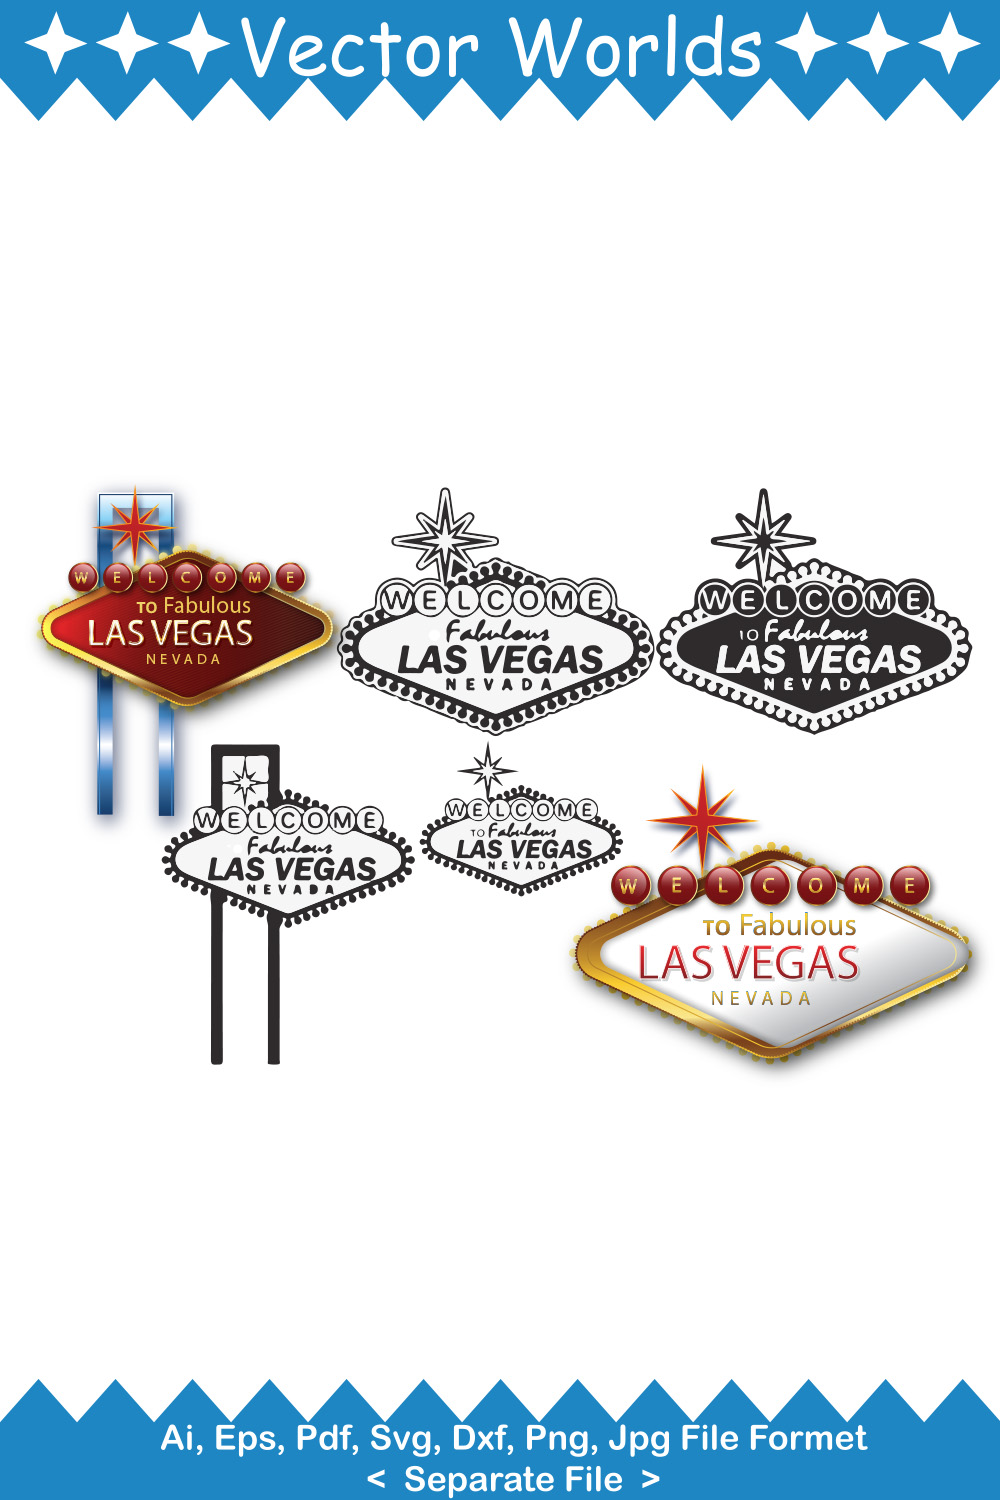 Las Vegas SVG Vector Design pinterest preview image.